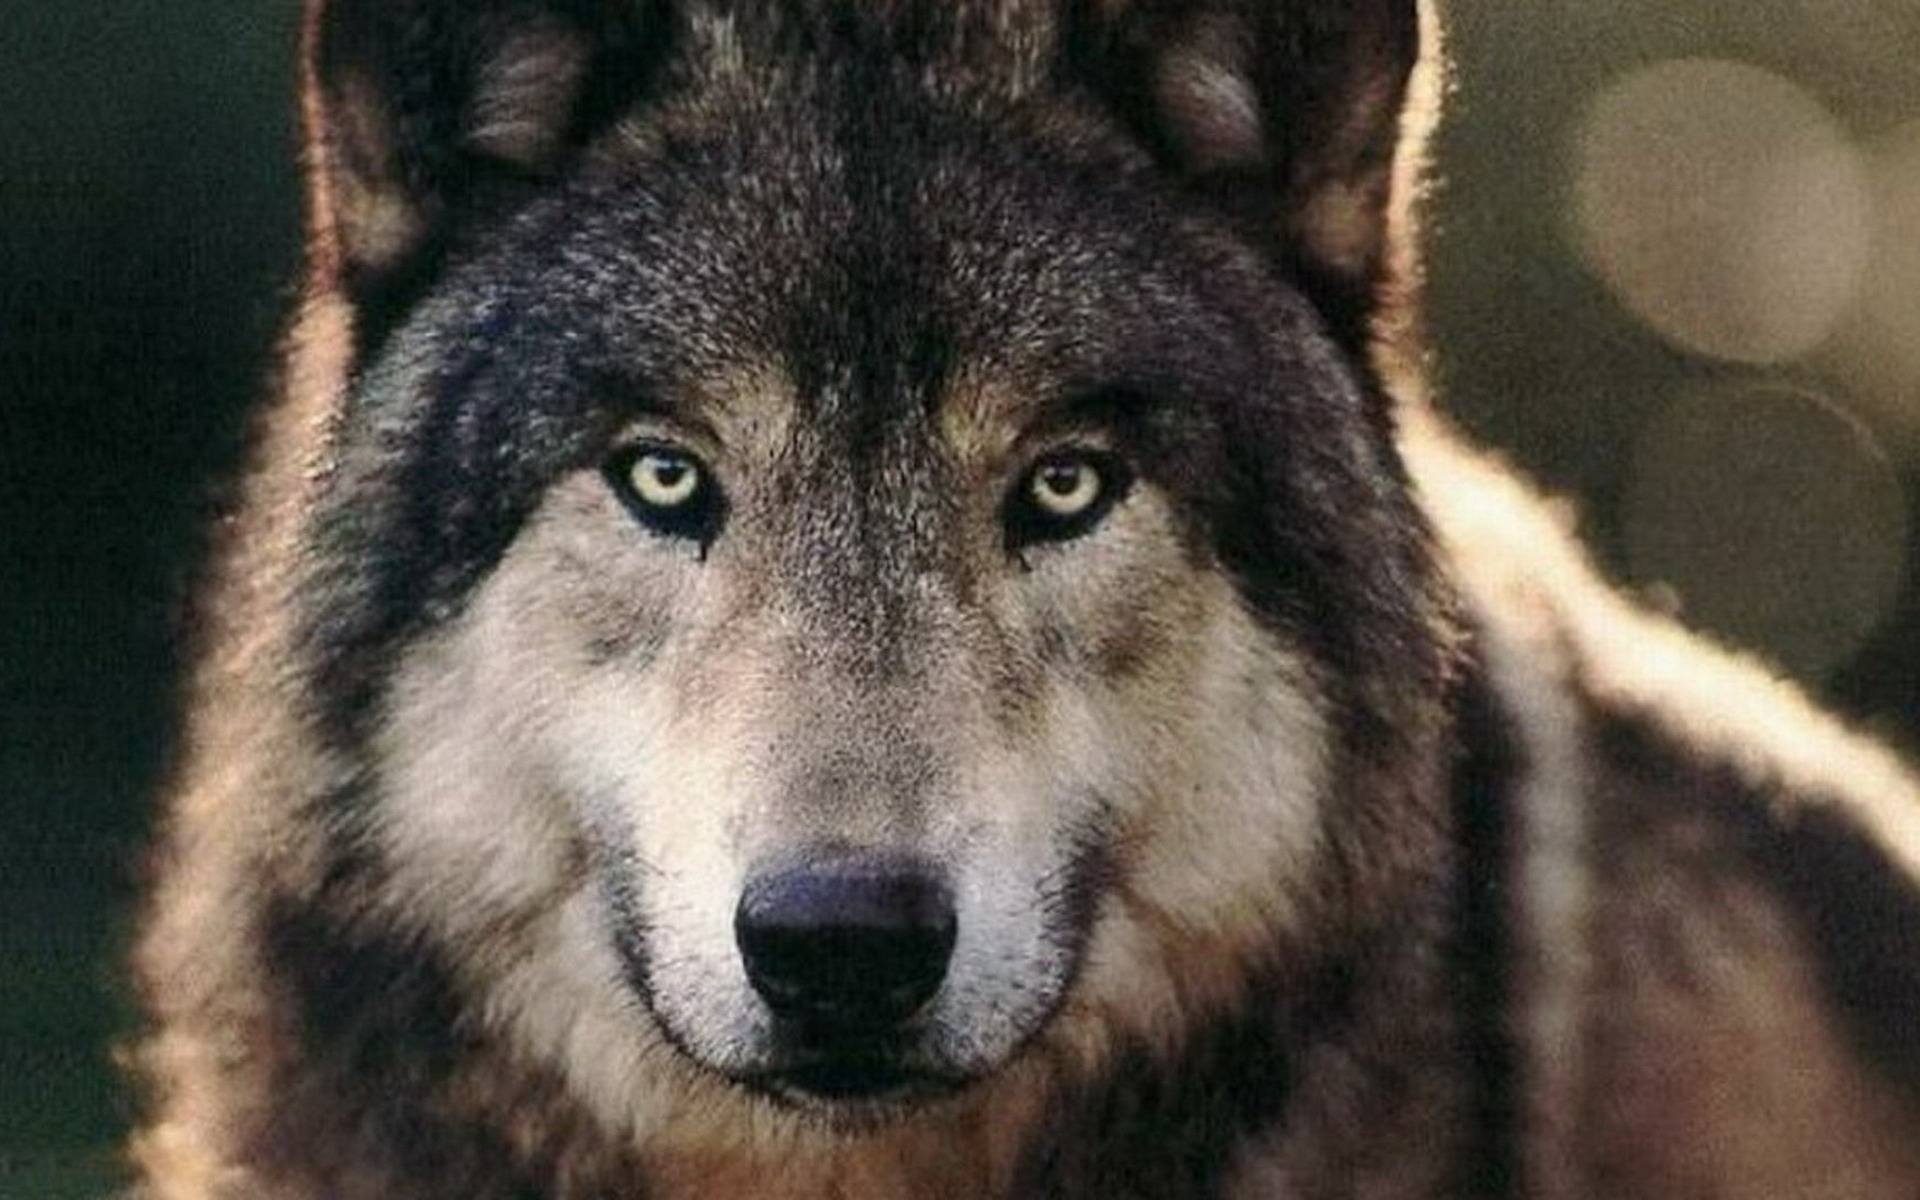 cry是哭,wolf是狼,cry wolf为什么不是哭泣的狼?